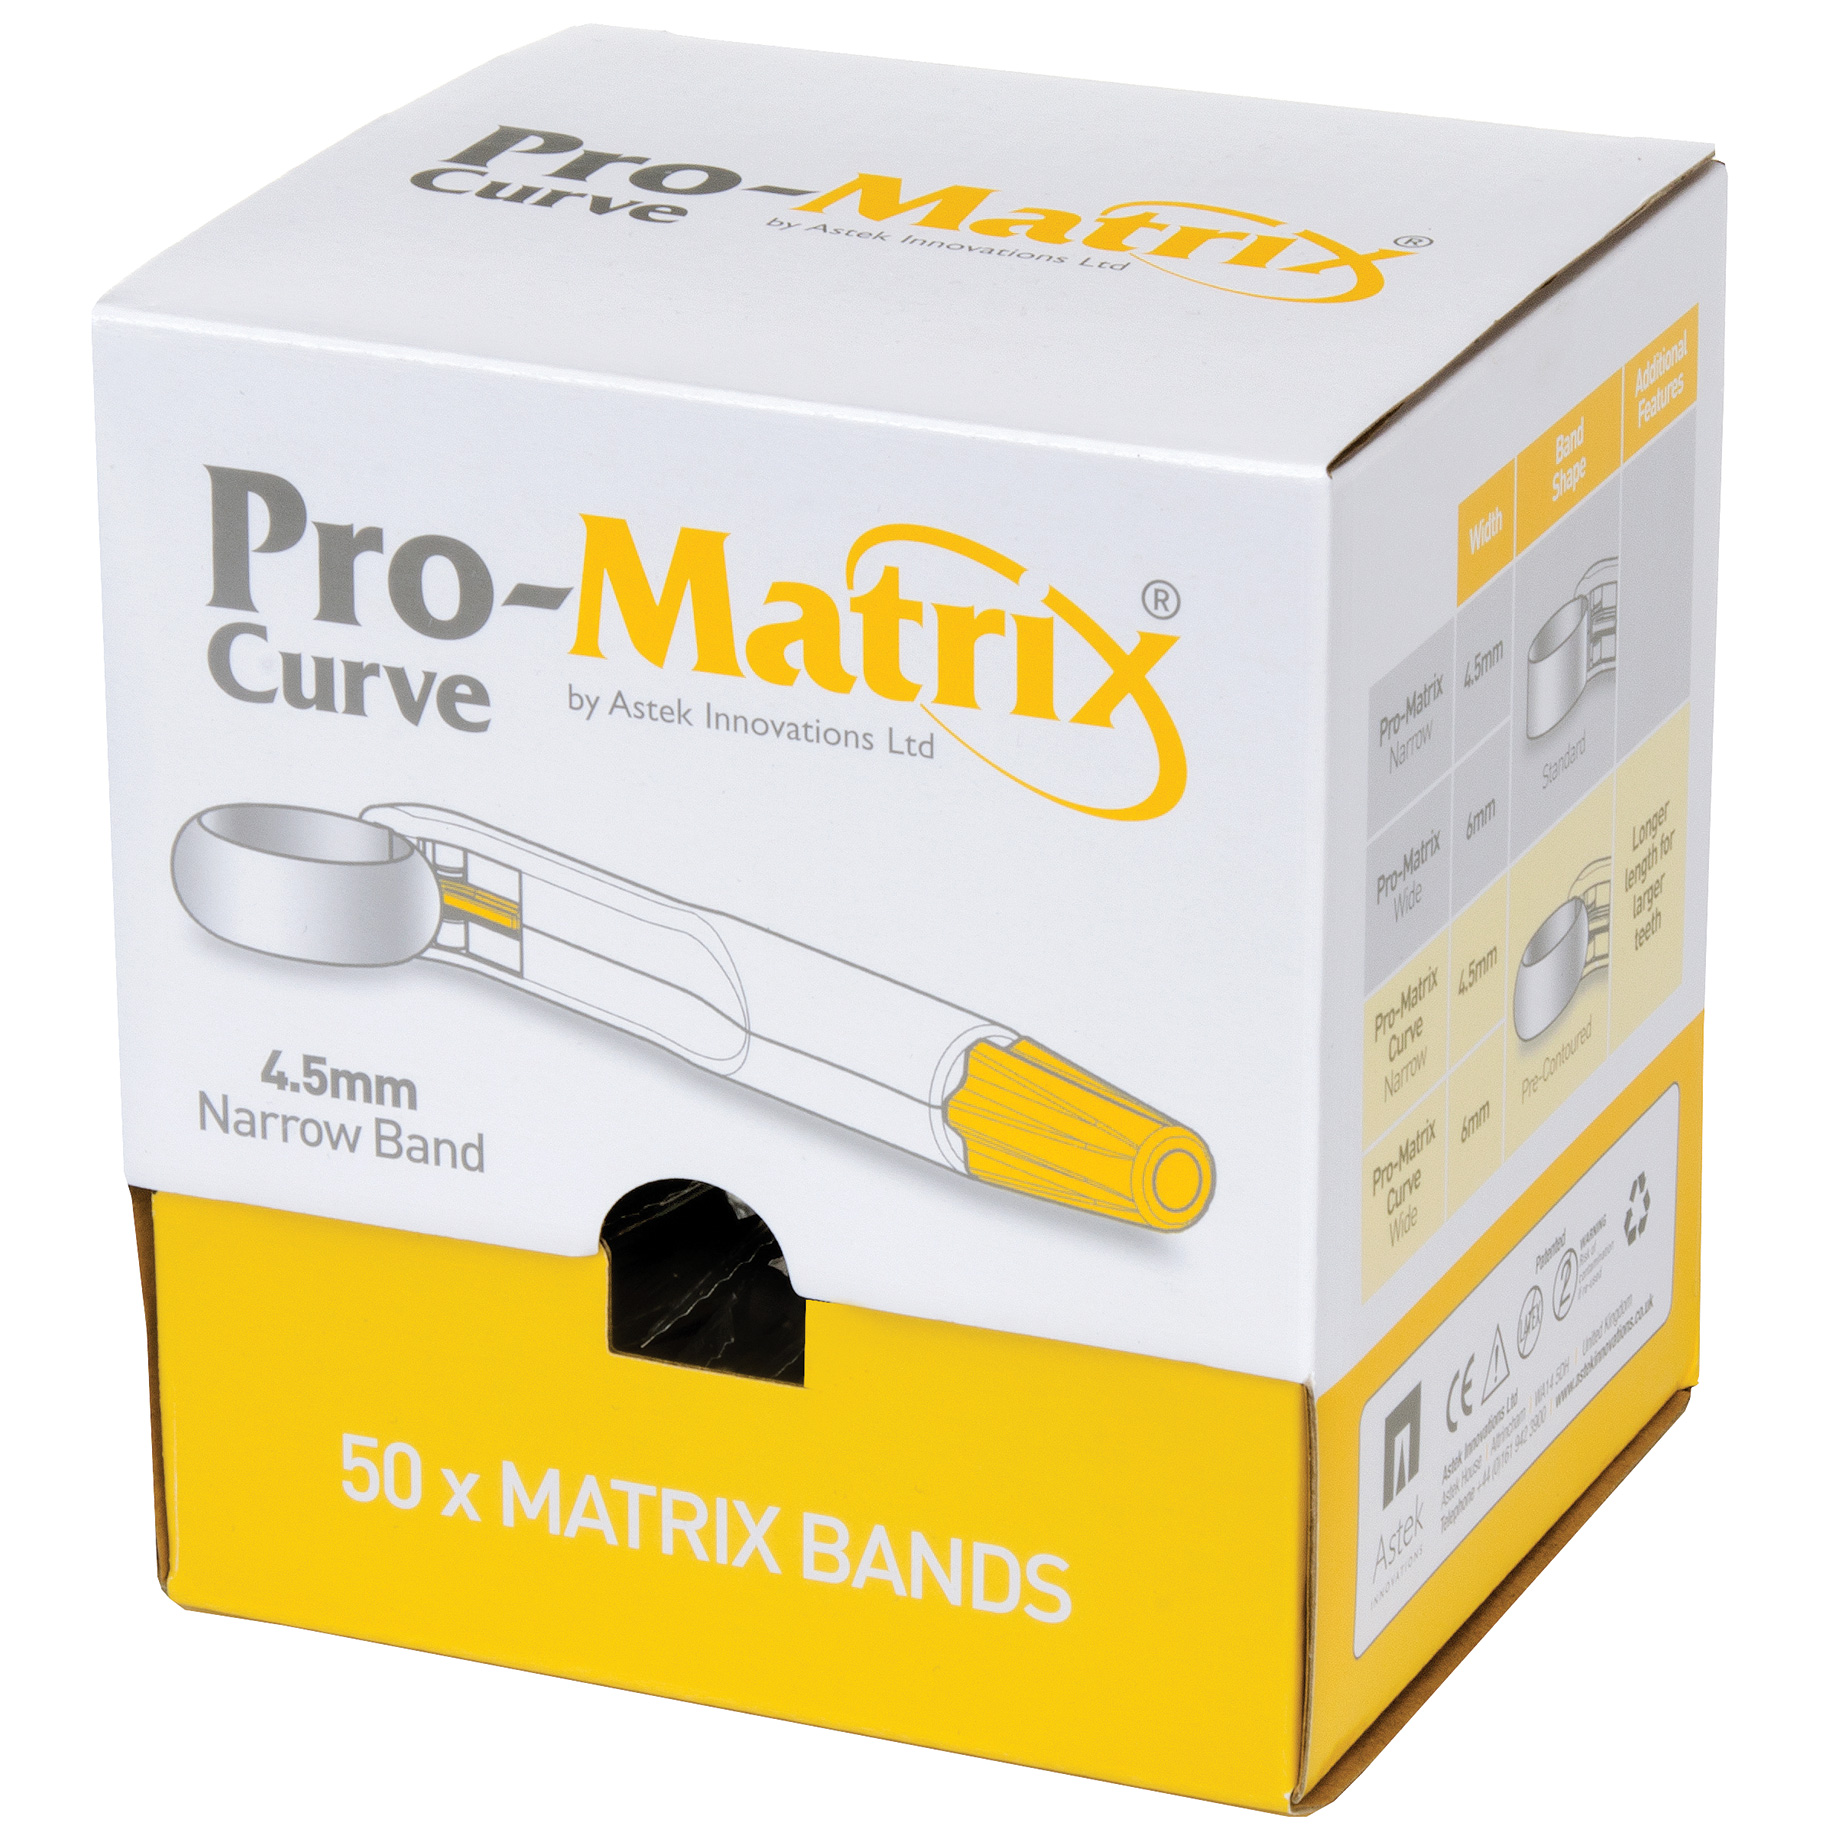 Pro-Matrix Curved Single-Use Matrix Band Narrow - 4.5mm Yellow 